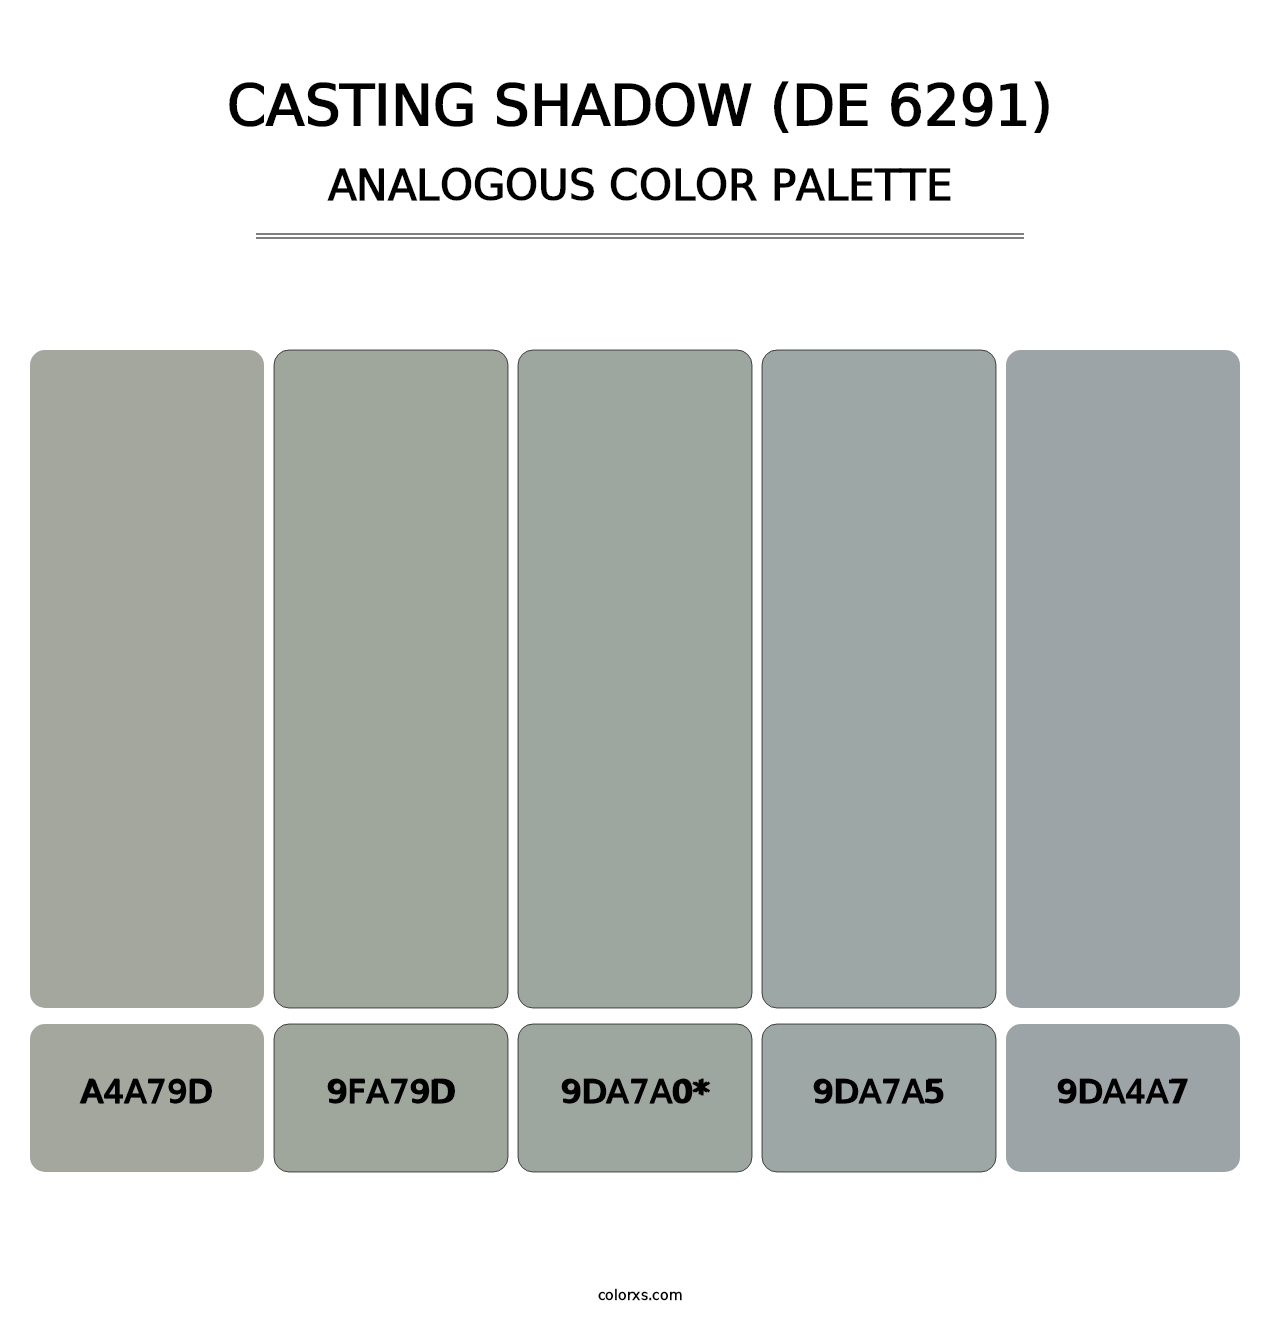 Casting Shadow (DE 6291) - Analogous Color Palette